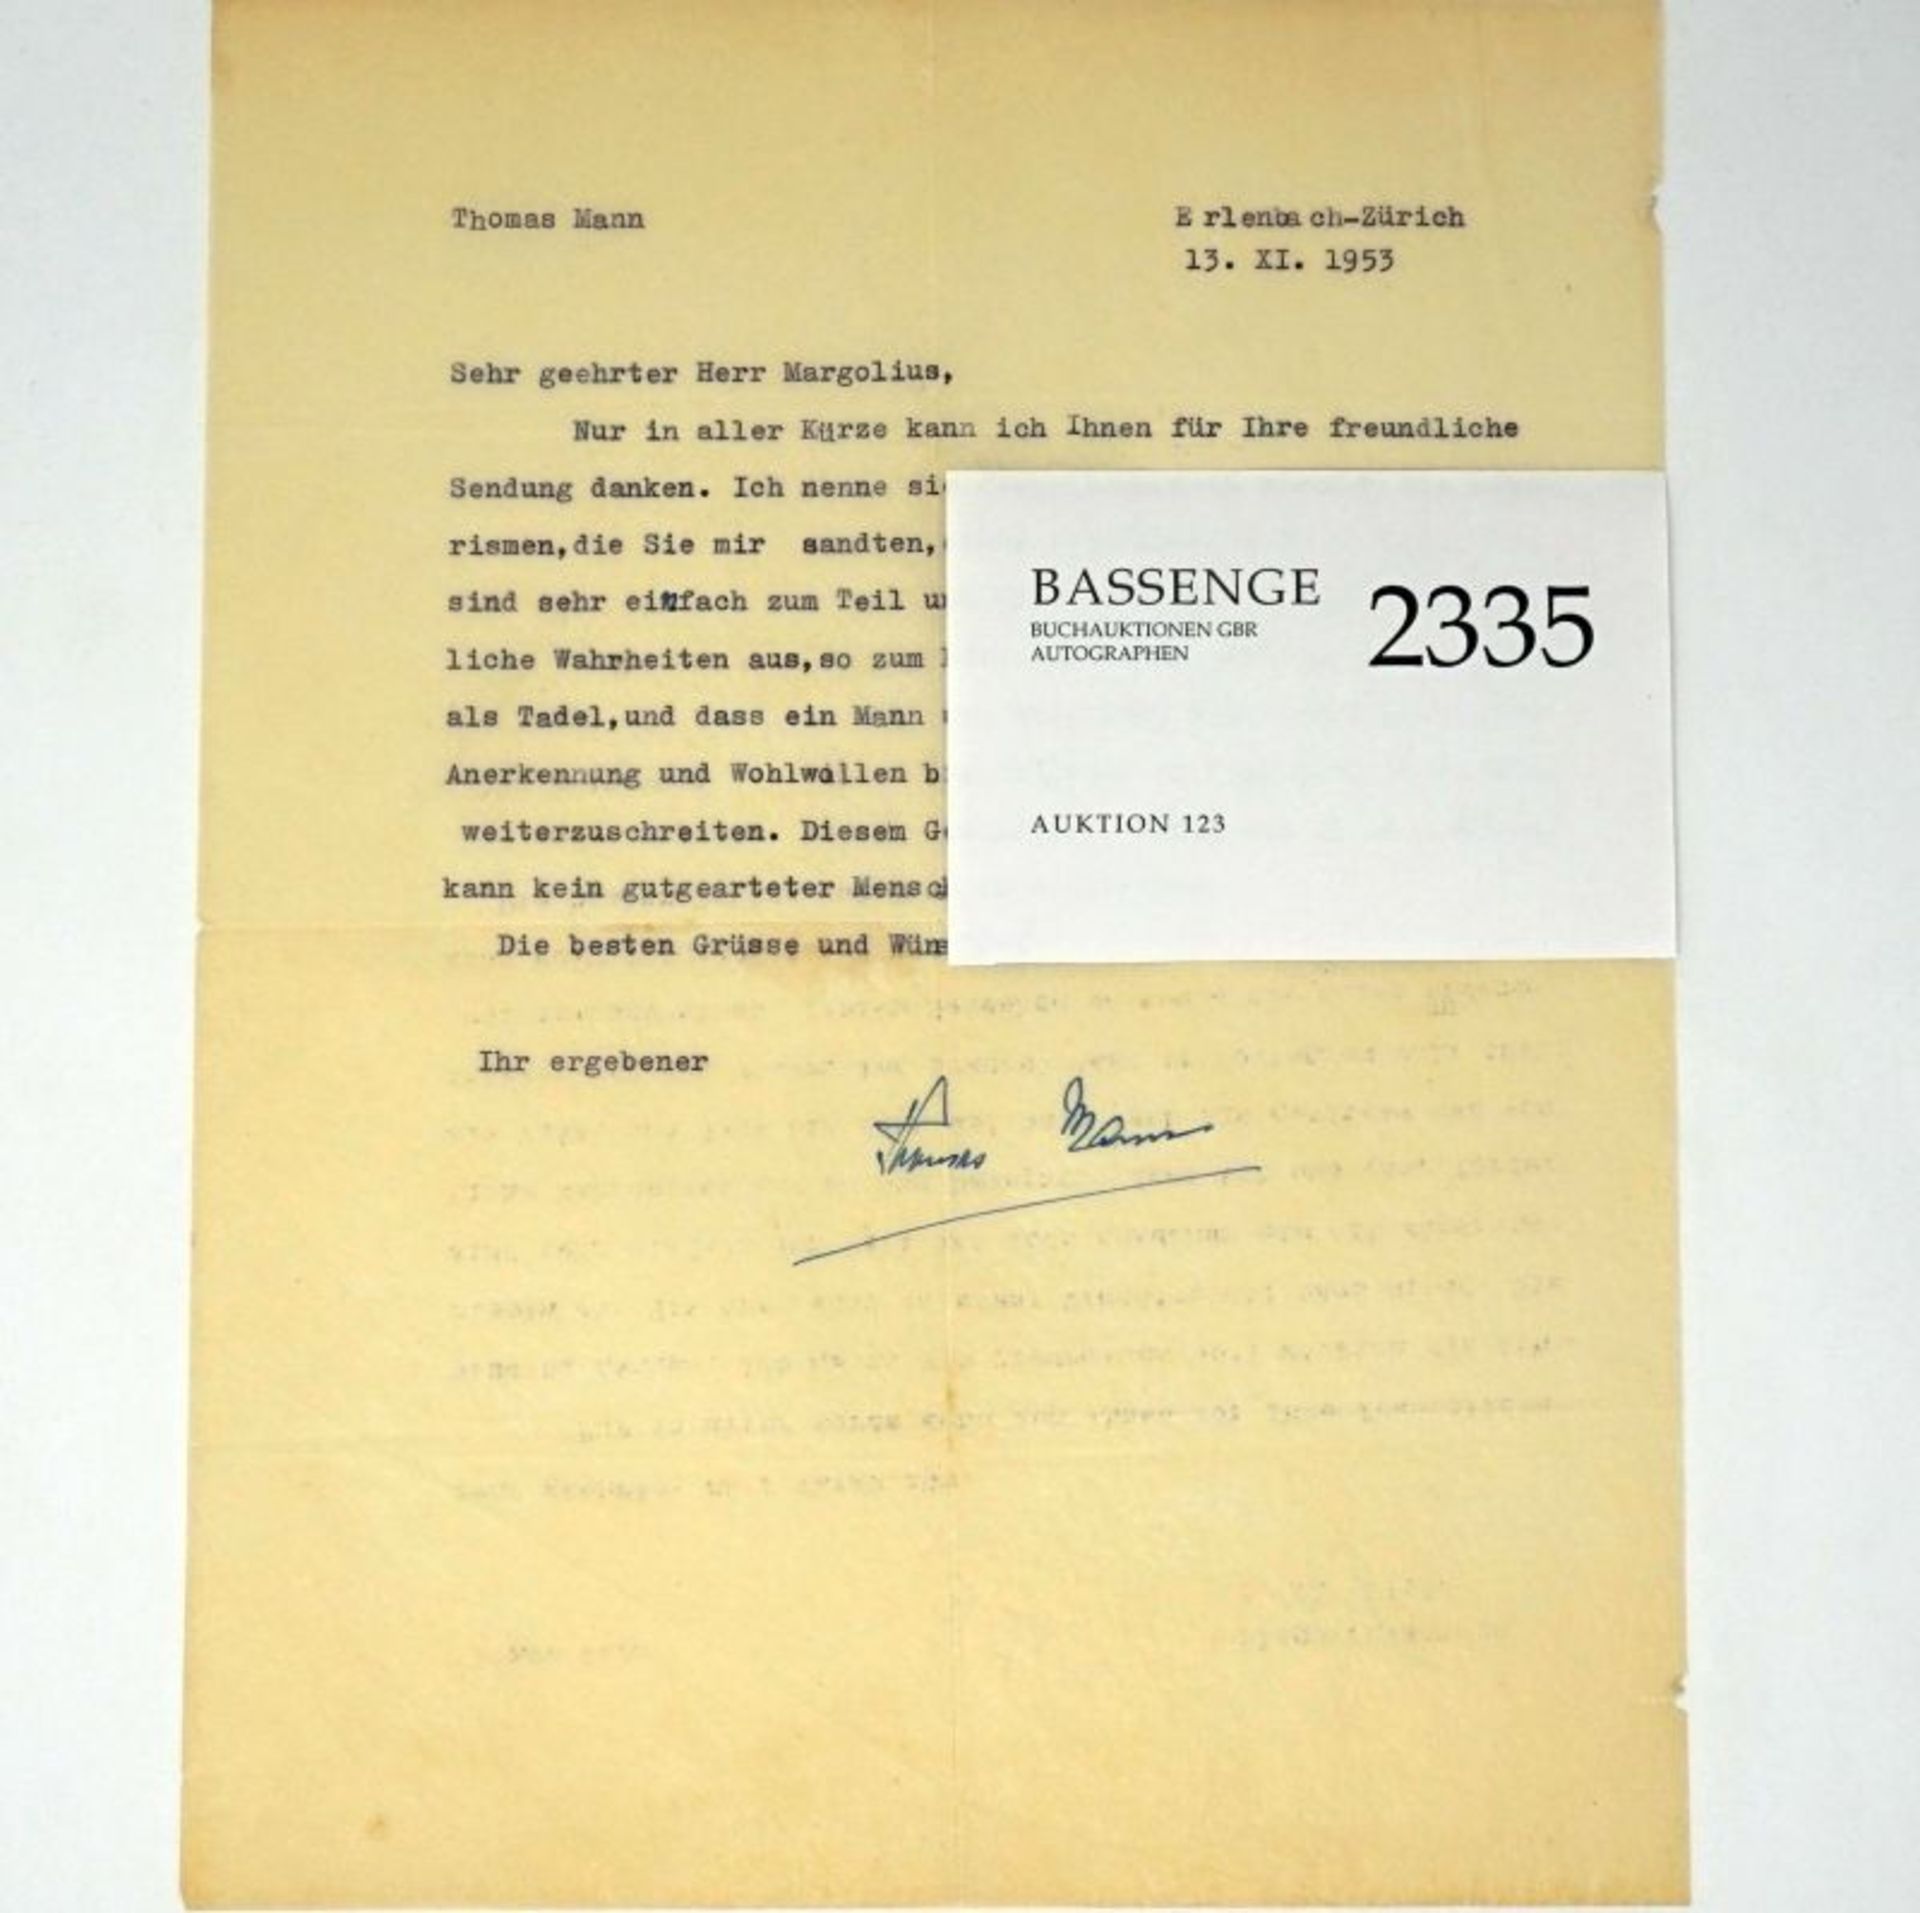 Mann, Thomas: Brief 1953 an Hans Margolius